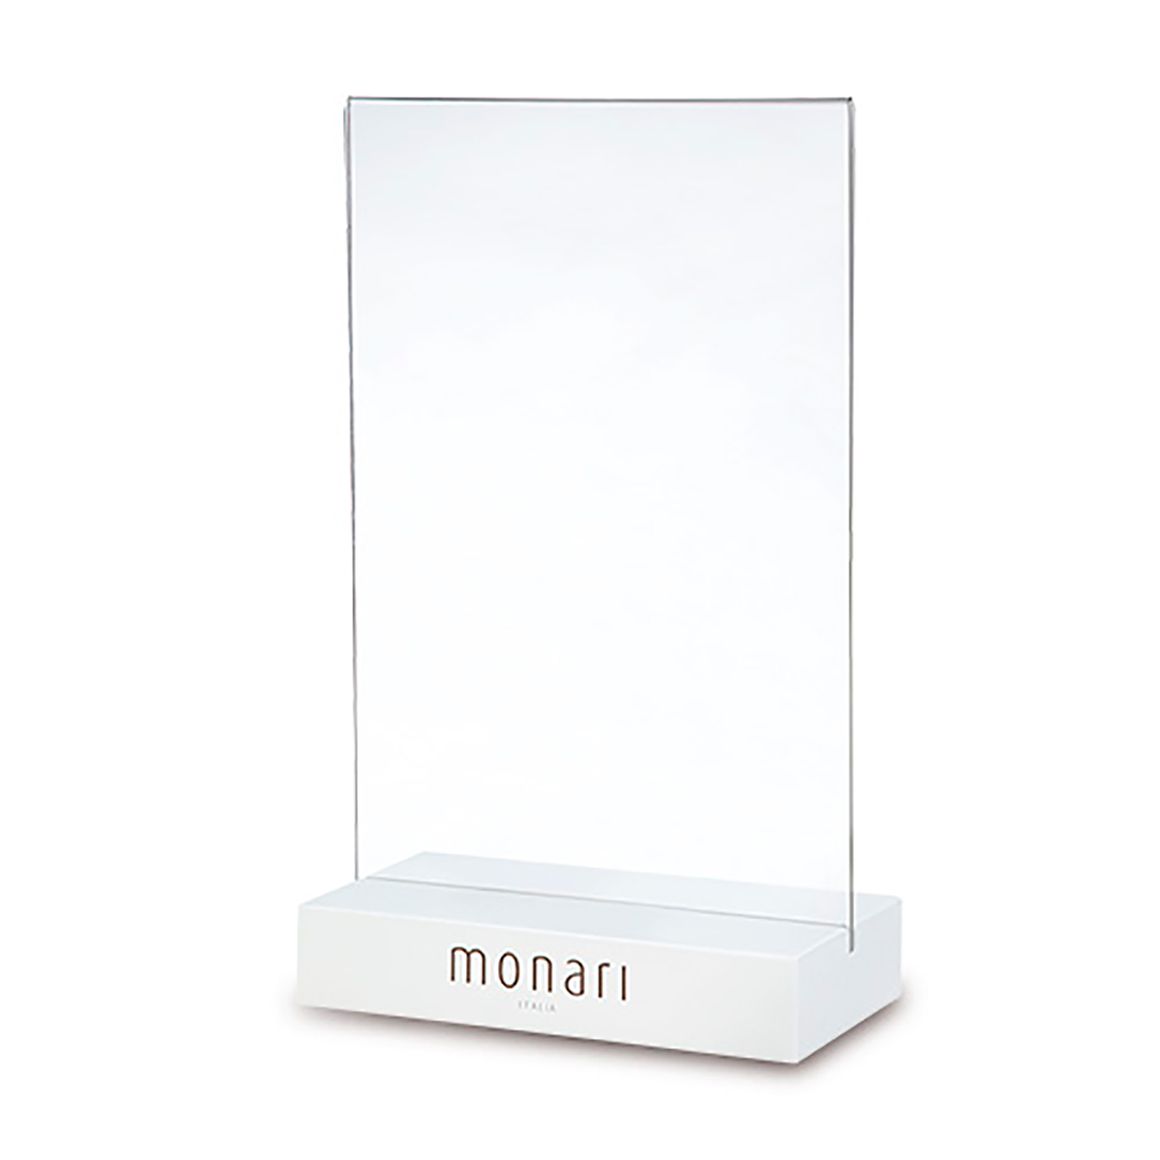 Custom Display for Monari